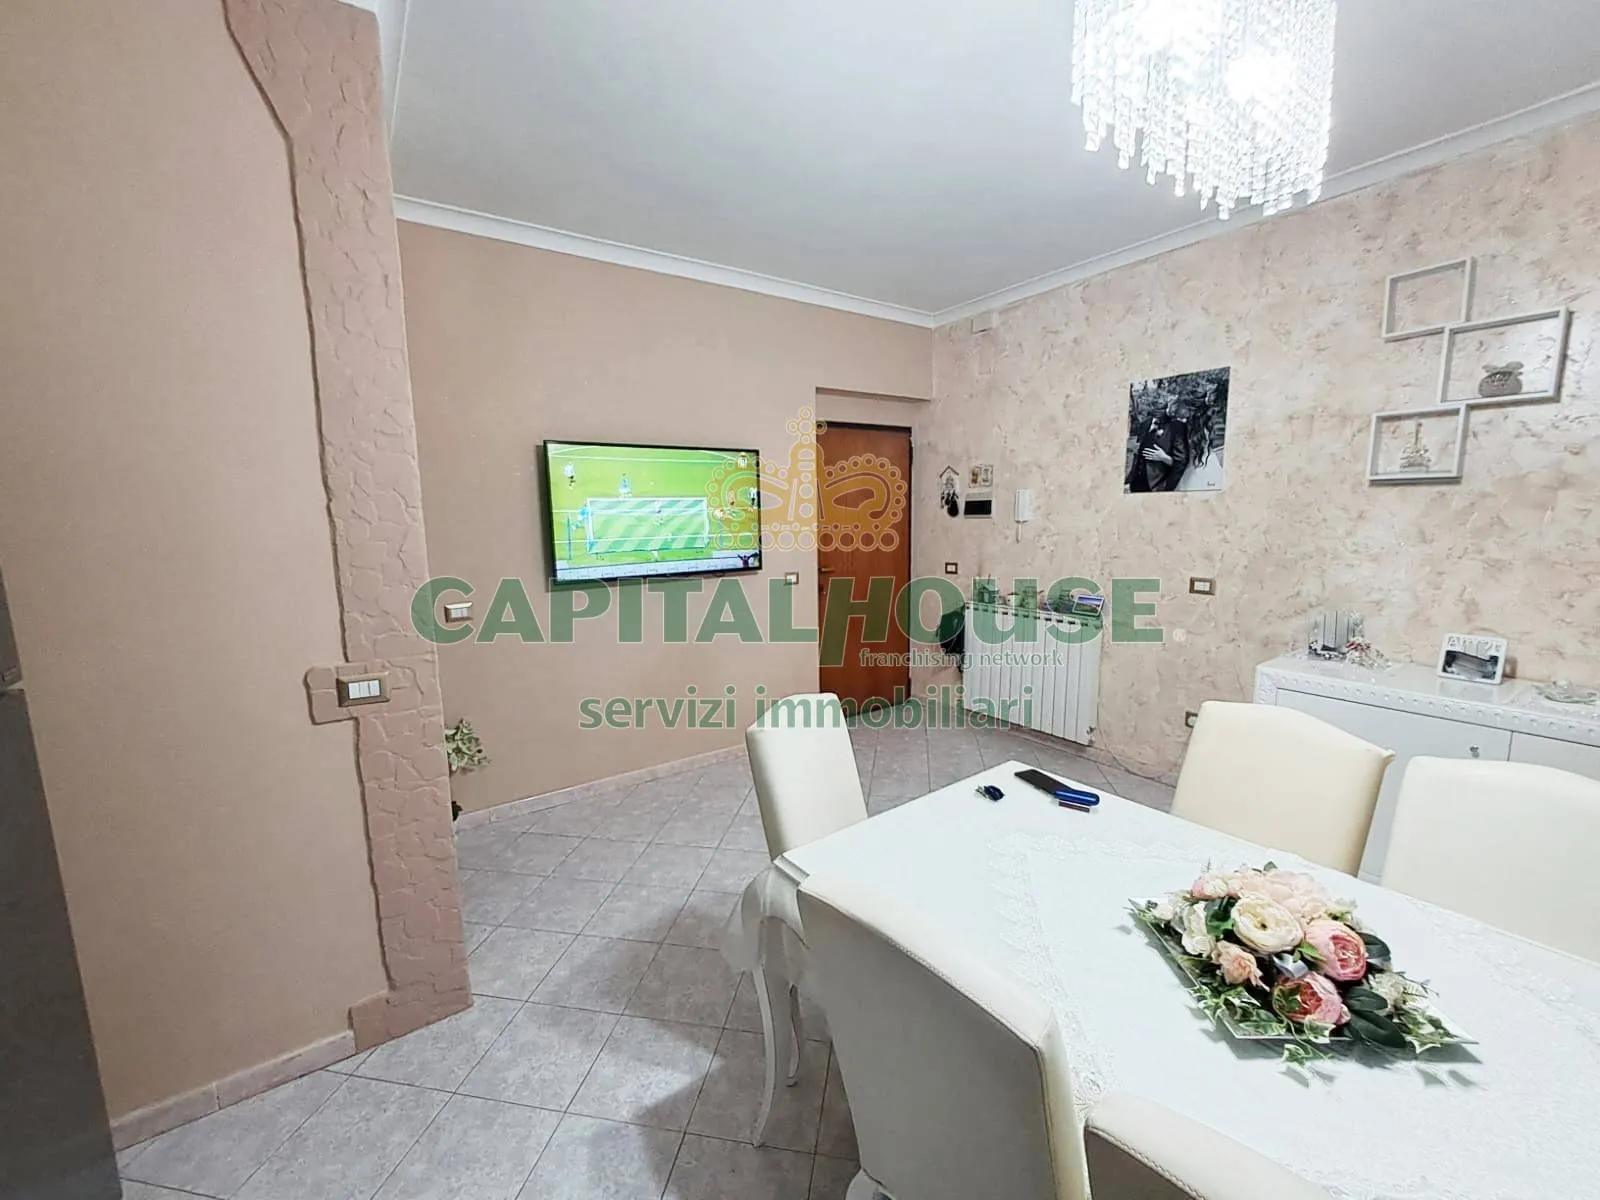 Immagine per Appartamento in vendita a Calvizzano